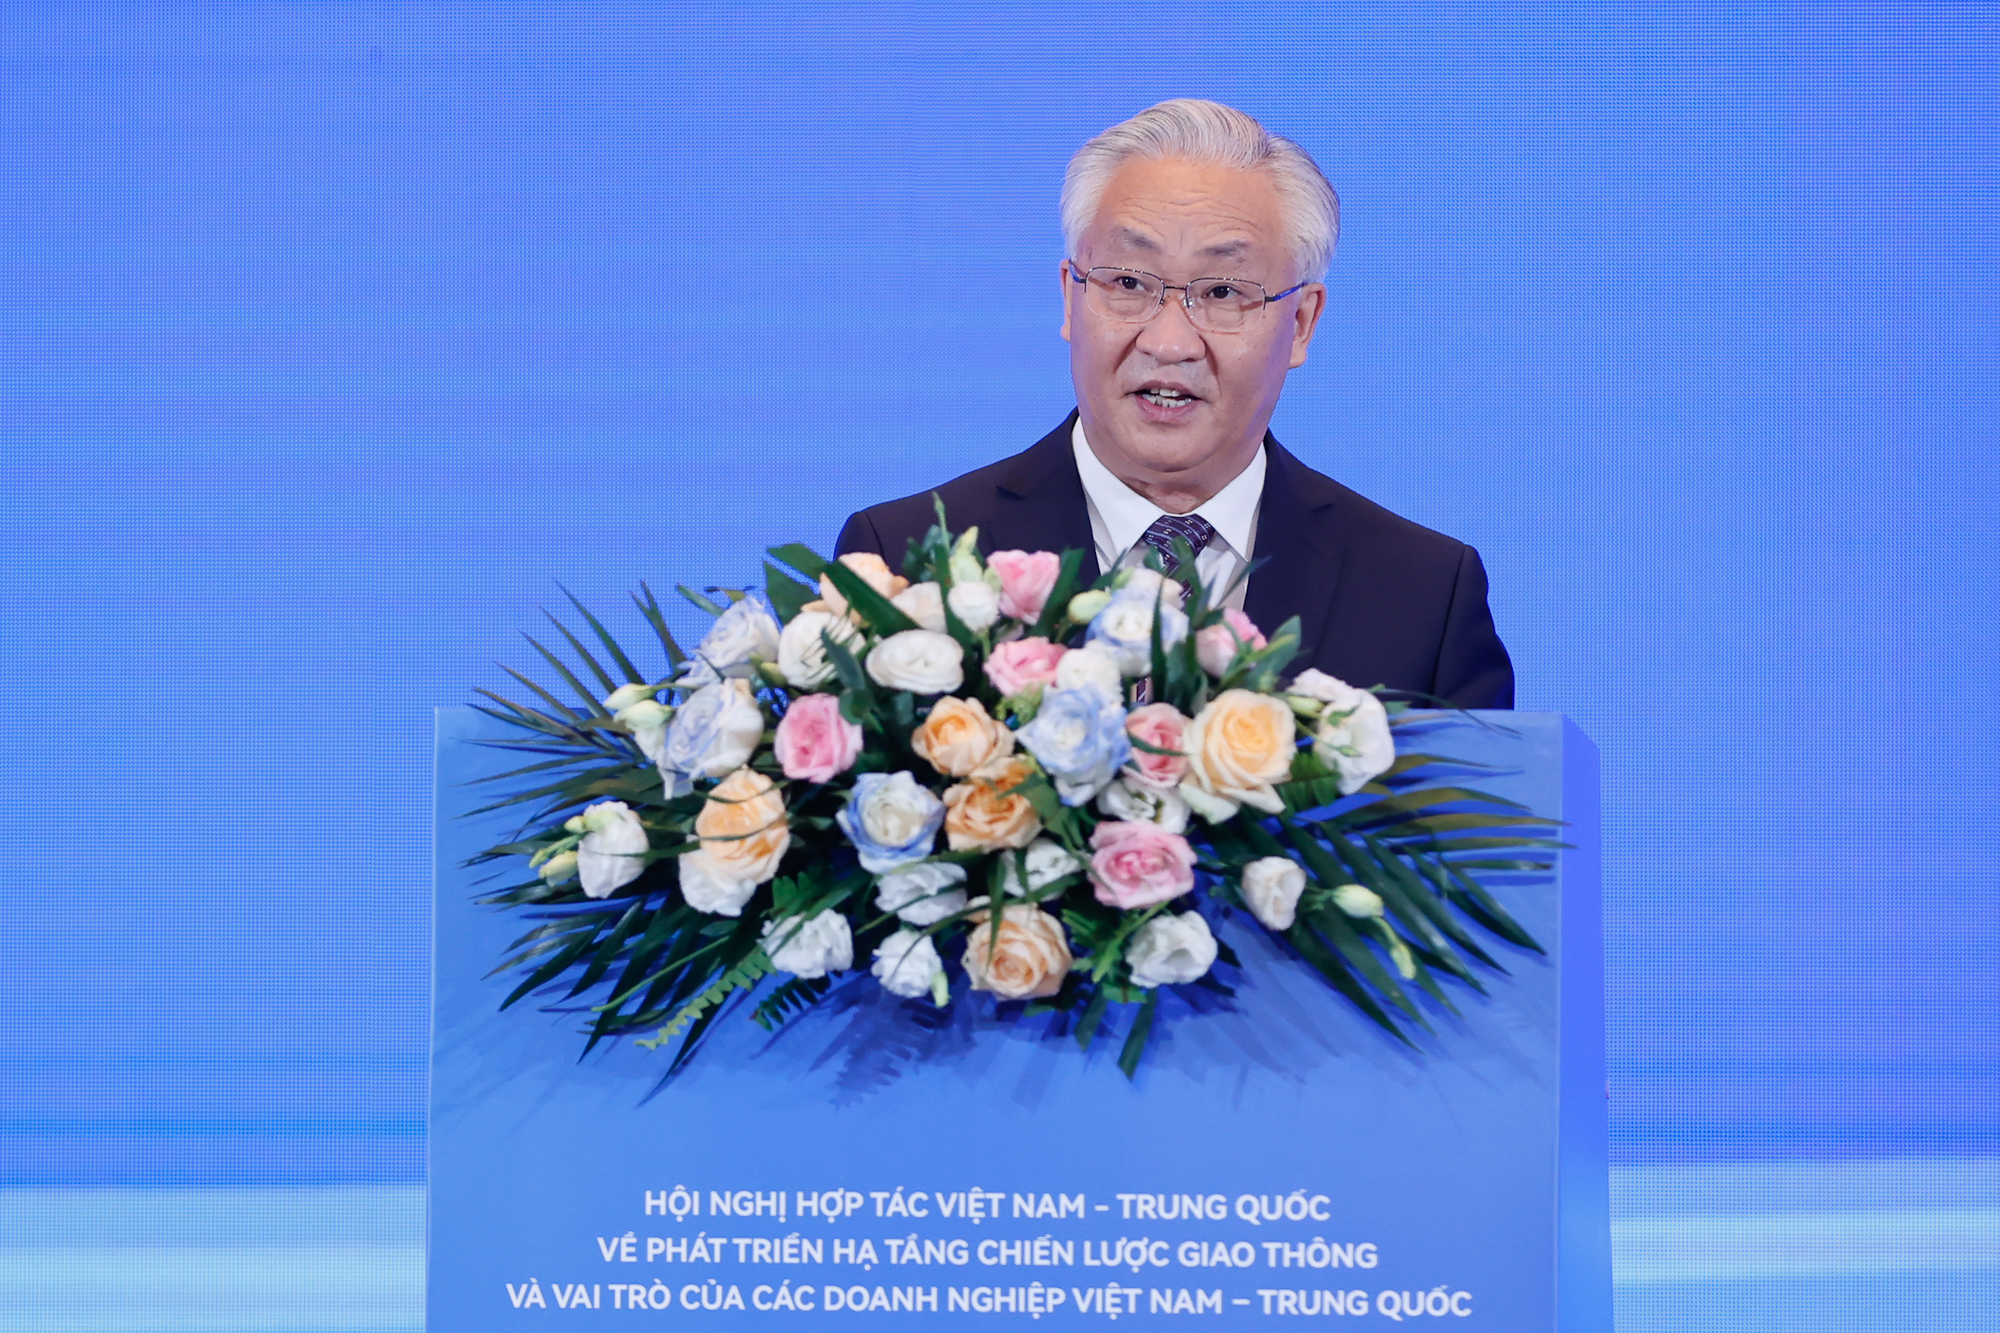 Phó Thủ tướng Trung Quốc Trương Quốc Thanh hoan nghênh các cơ quan, doanh nghiệp hai nước cùng nhau thúc đẩy hợp tác trong các lĩnh vực, nhất là hợp tác phát triển giao thông, kết nối giao thông giữa hai nước - Ảnh: VGP/Nhật Bắc